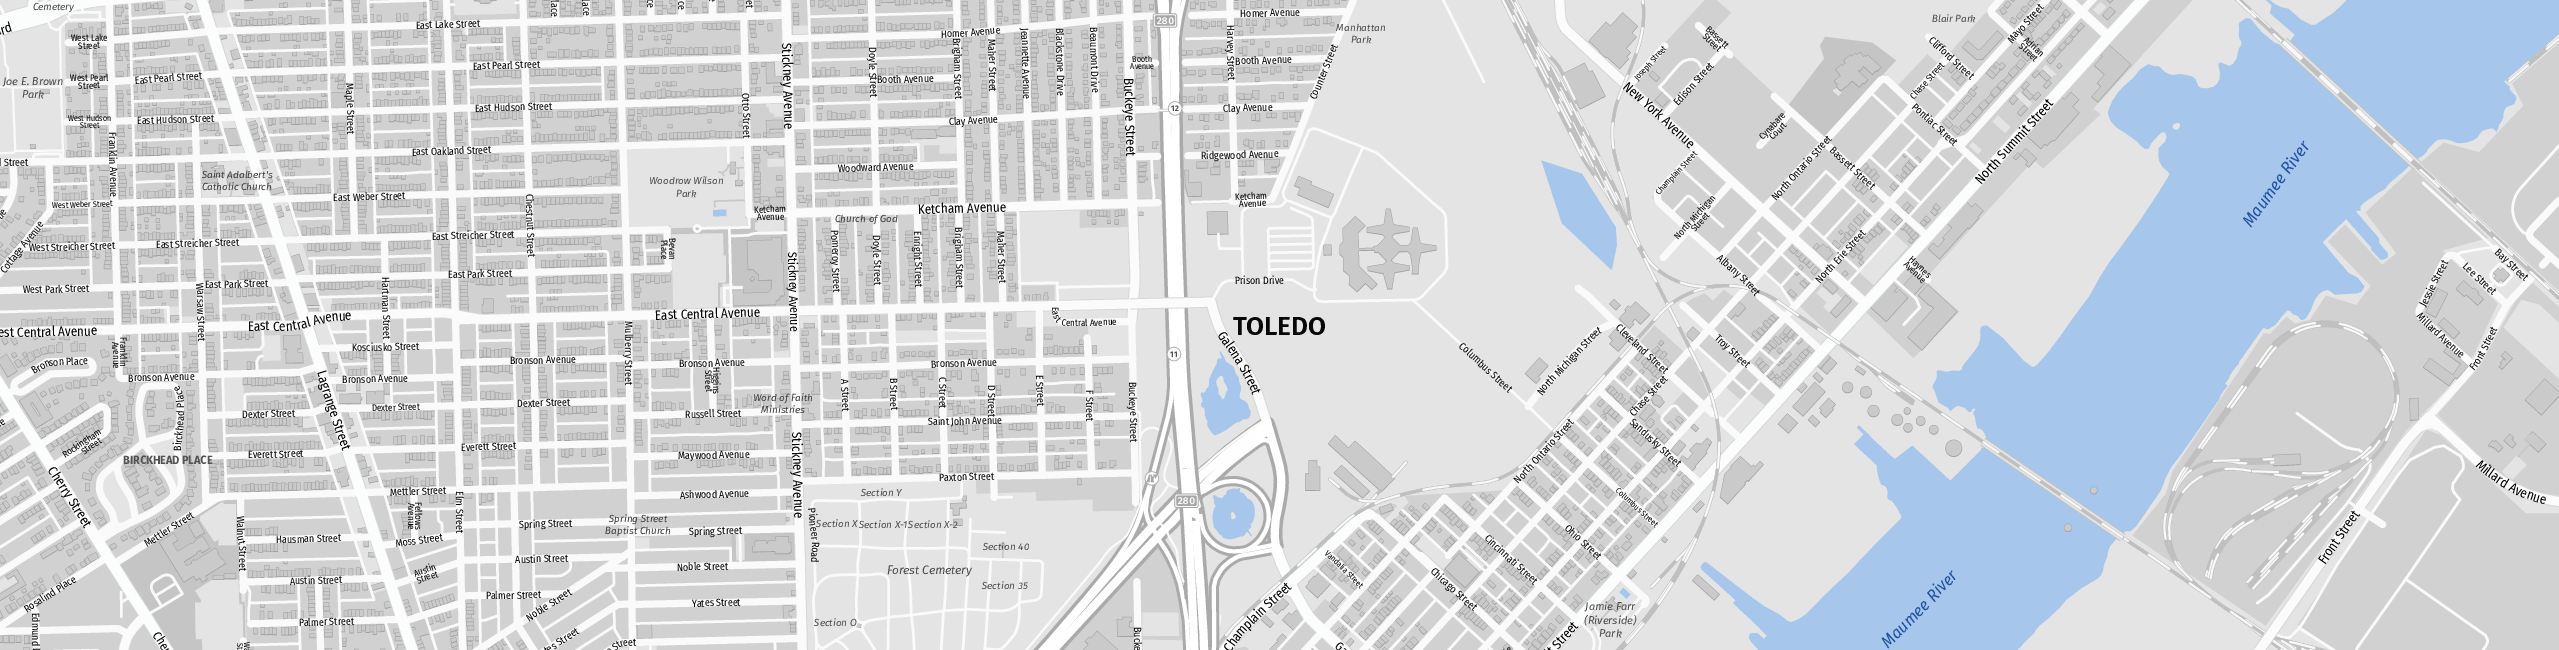 Stadtplan Toledo zum Downloaden.